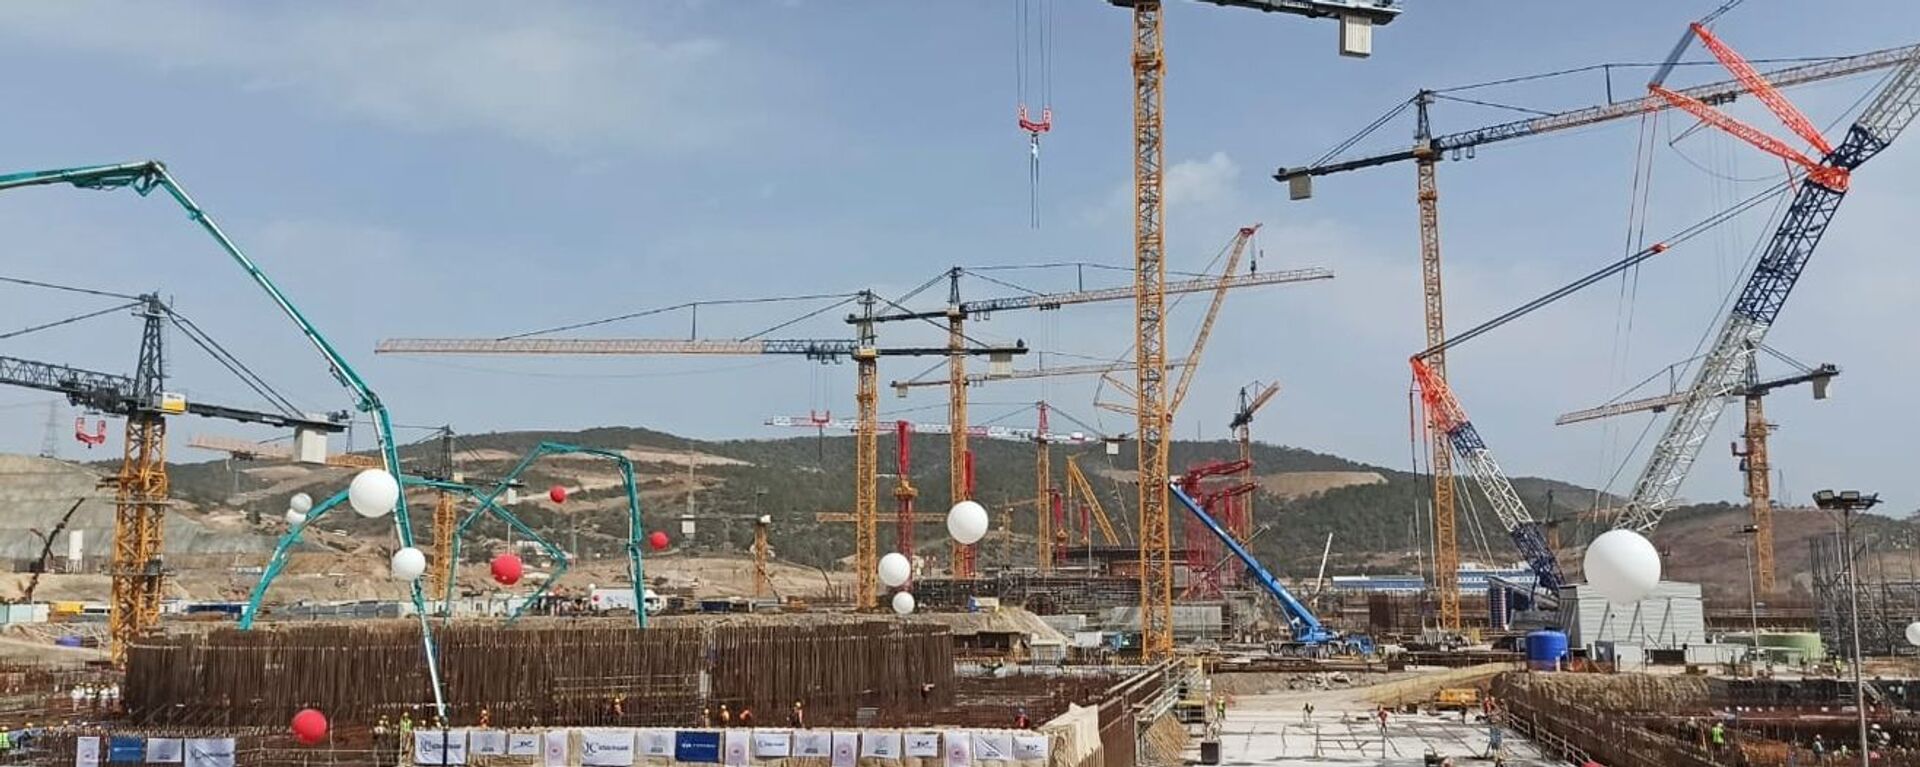 Начало строительства третьего блока АЭС Аккую в Турции - Sputnik Абхазия, 1920, 10.03.2021